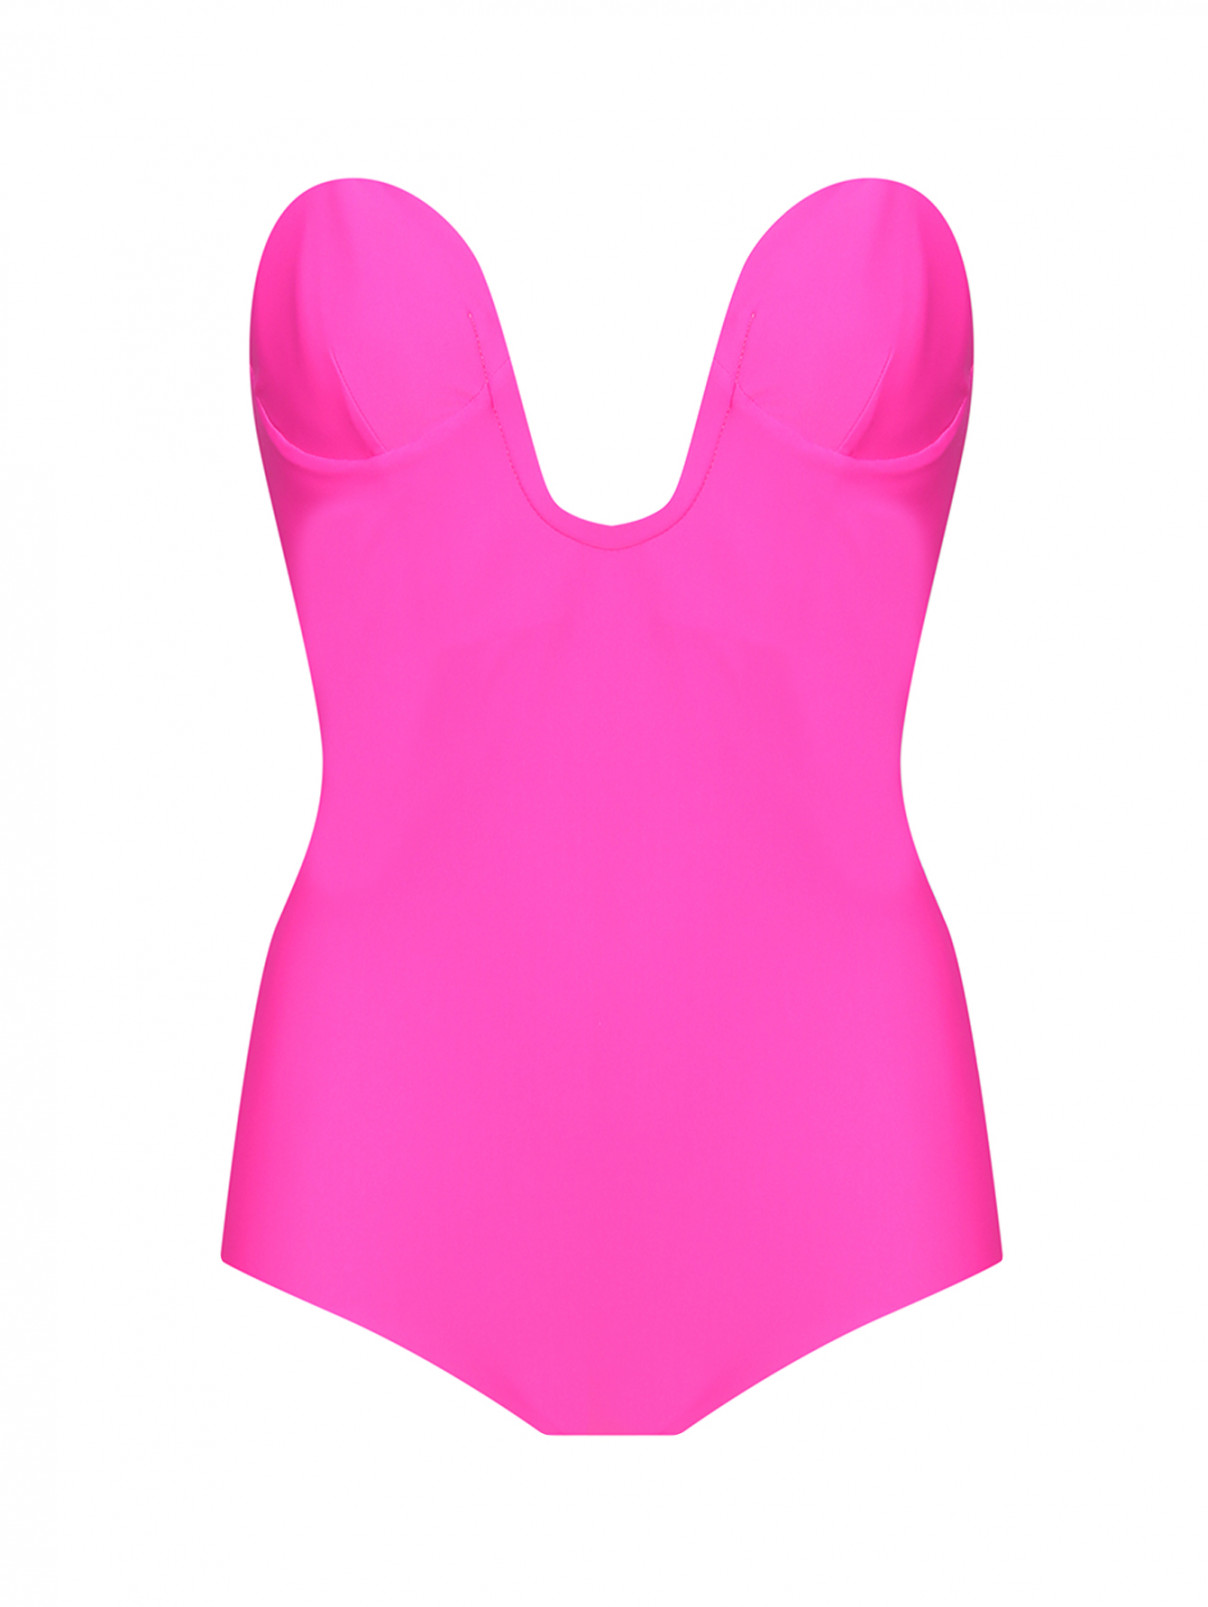 Слитный купальник N21  –  Общий вид  – Цвет:  Розовый